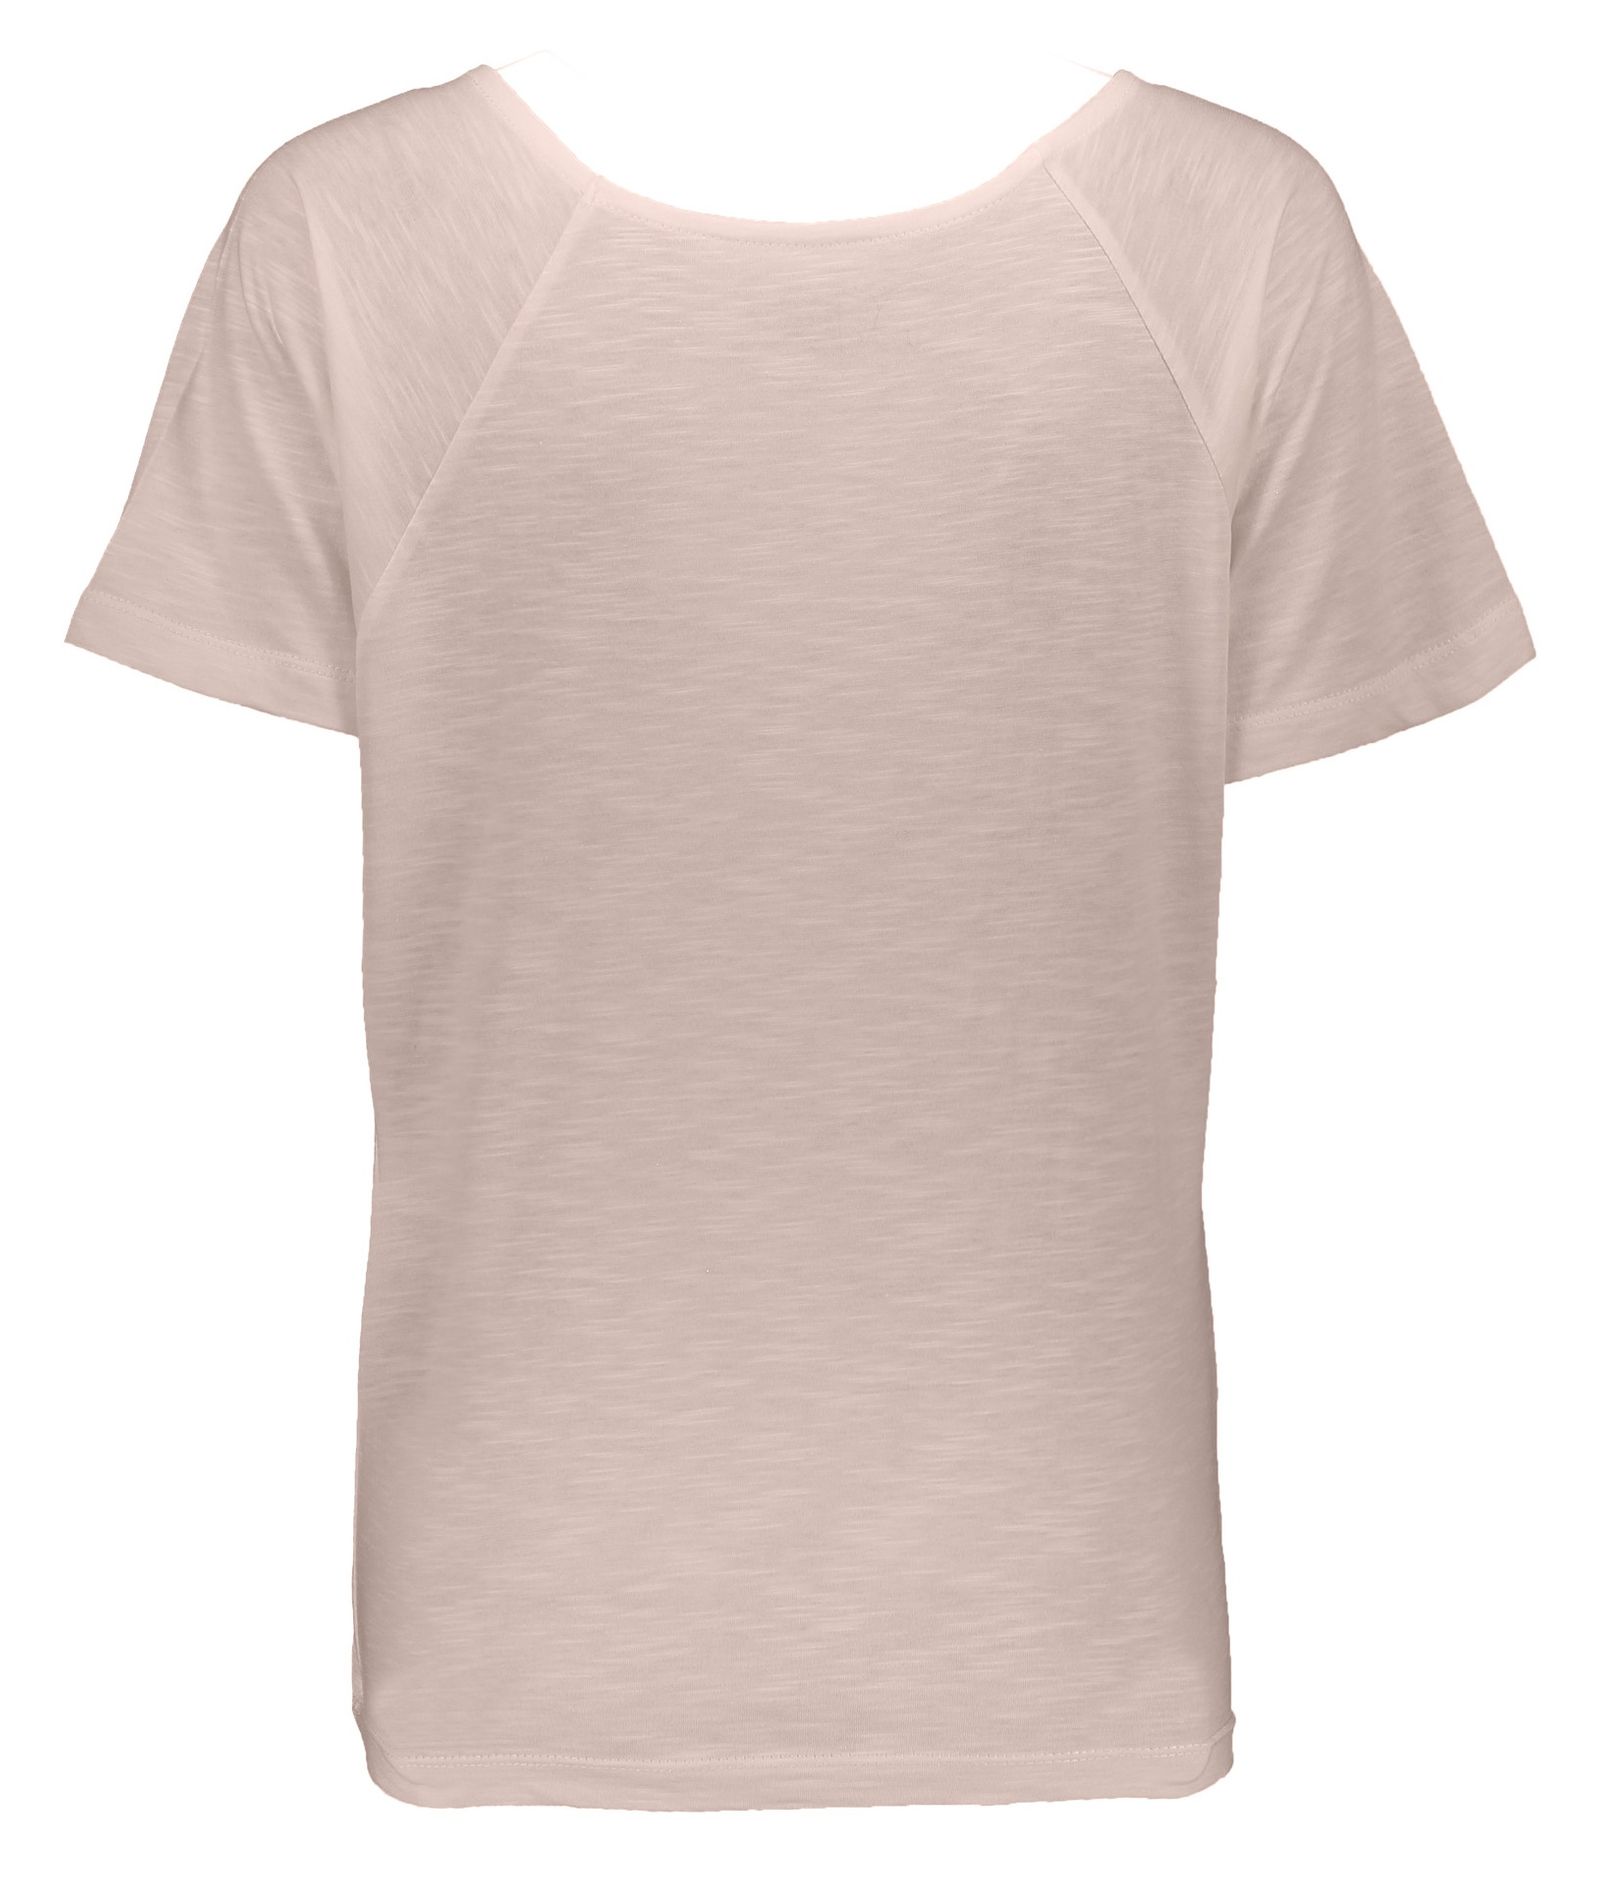 تی شرت زنانه گارودی مدل 1003104023-81 -  - 5